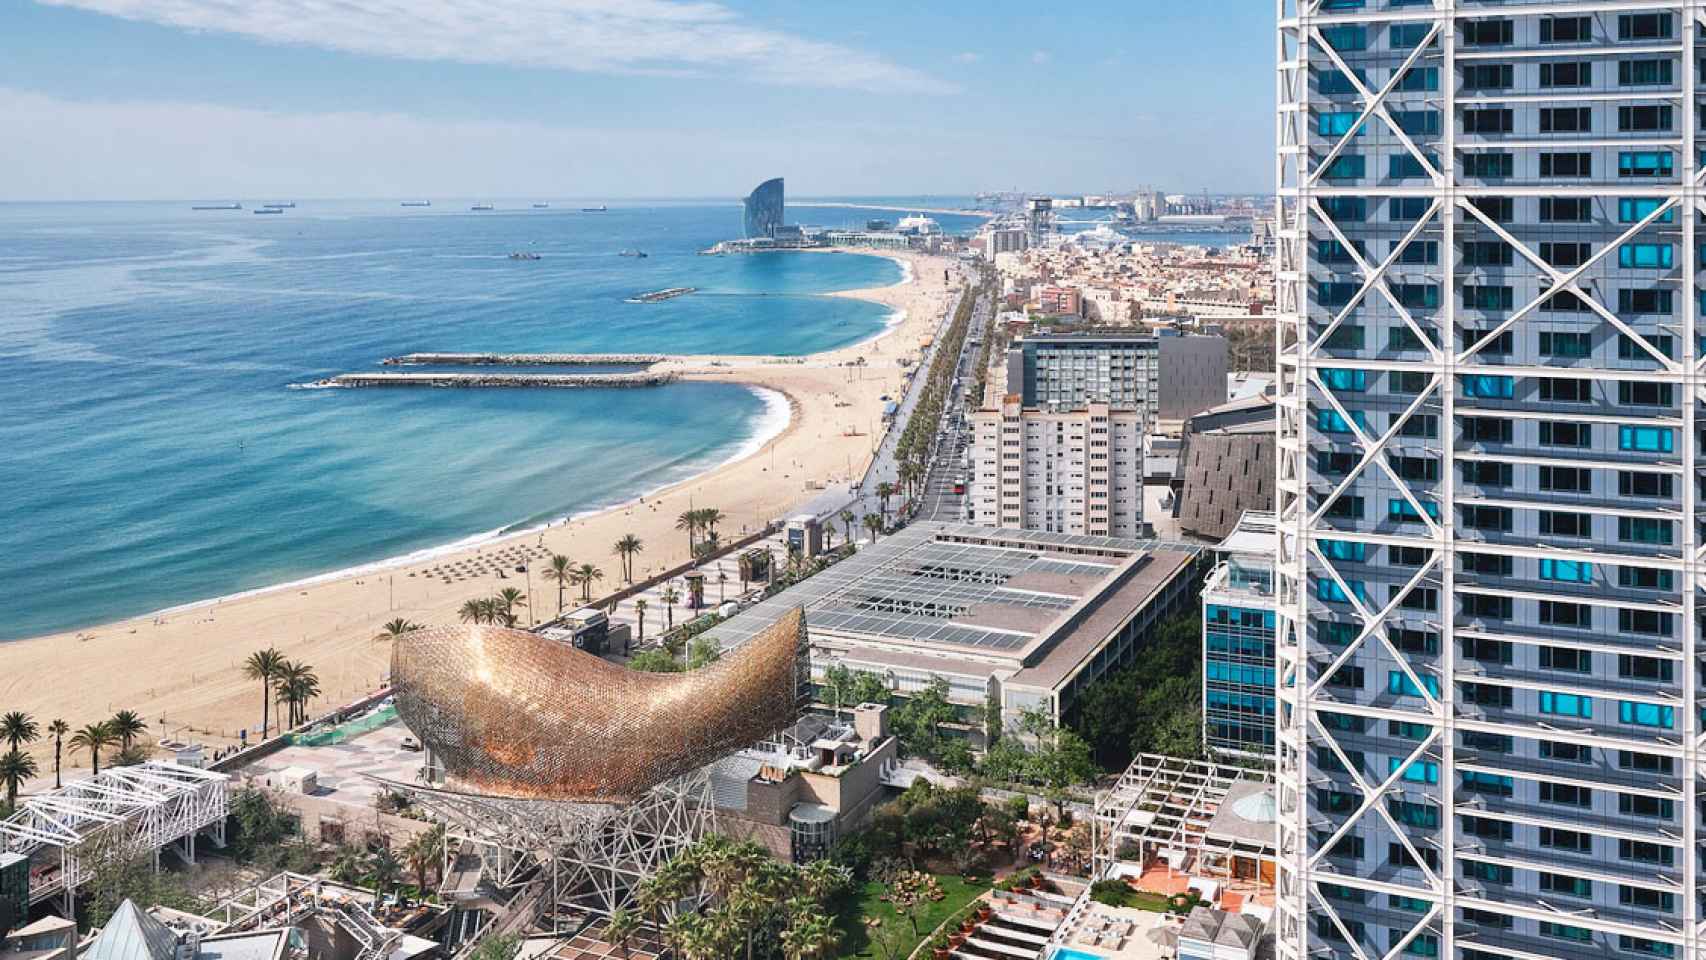 Imagen del Hotel Arts en el Frente Marítimo de Barcelona con el hotel W de fondo